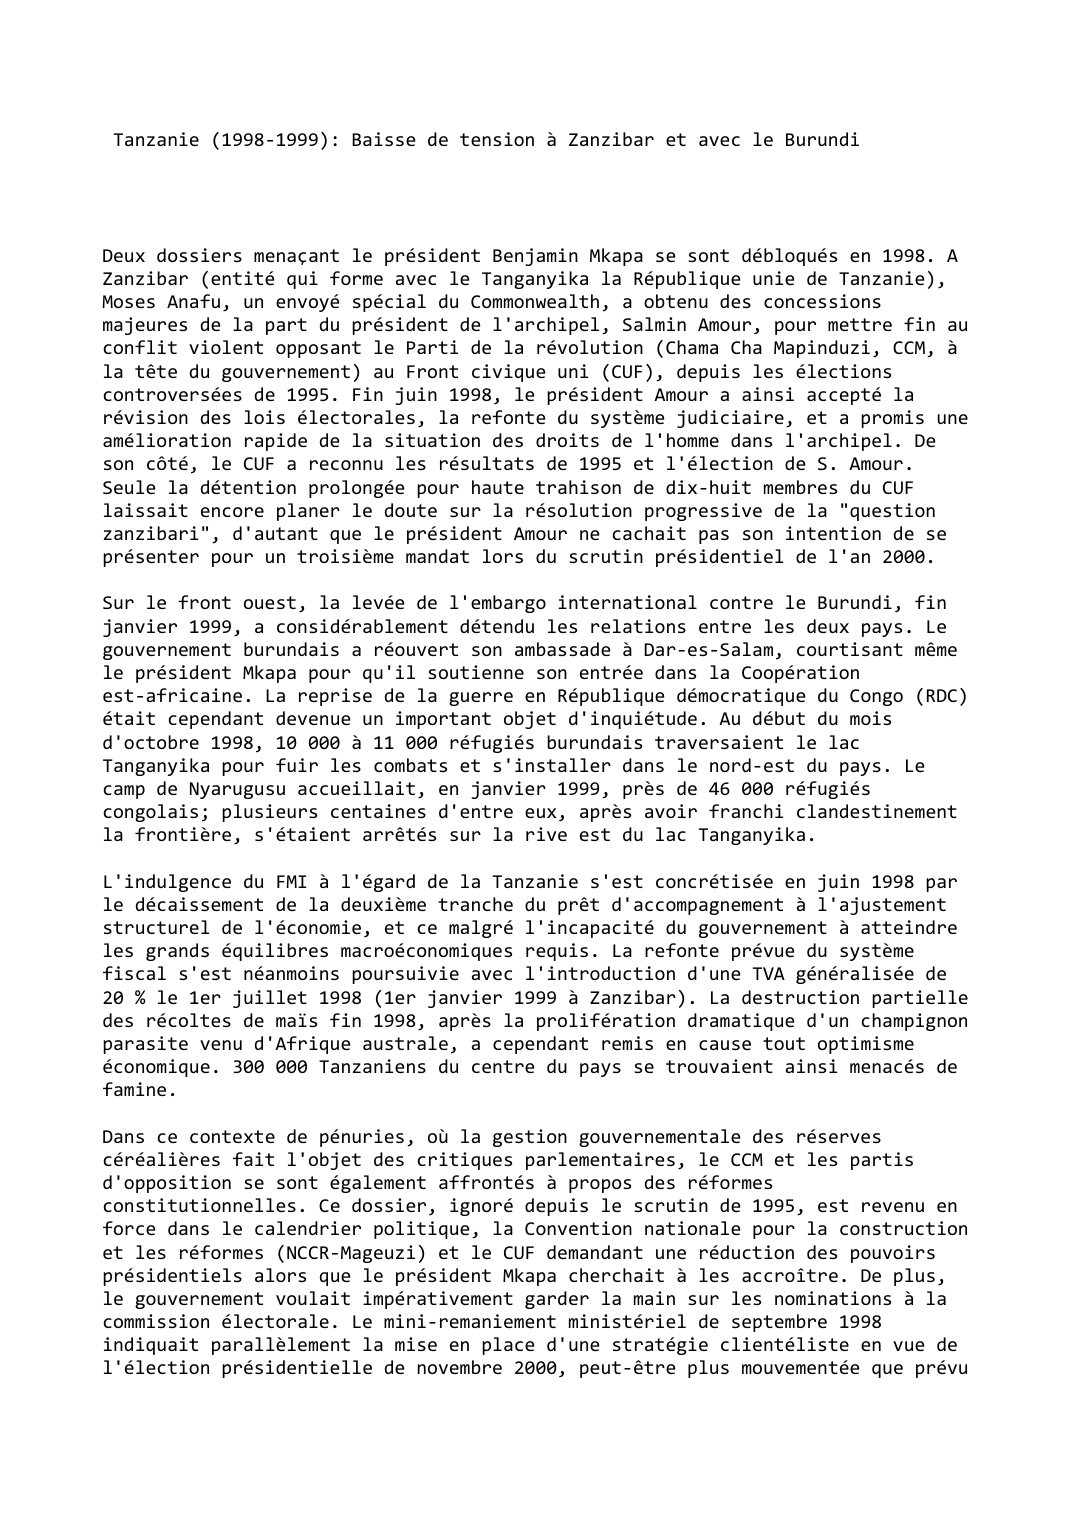 Prévisualisation du document Tanzanie (1998-1999): Baisse de tension à Zanzibar et avec le Burundi